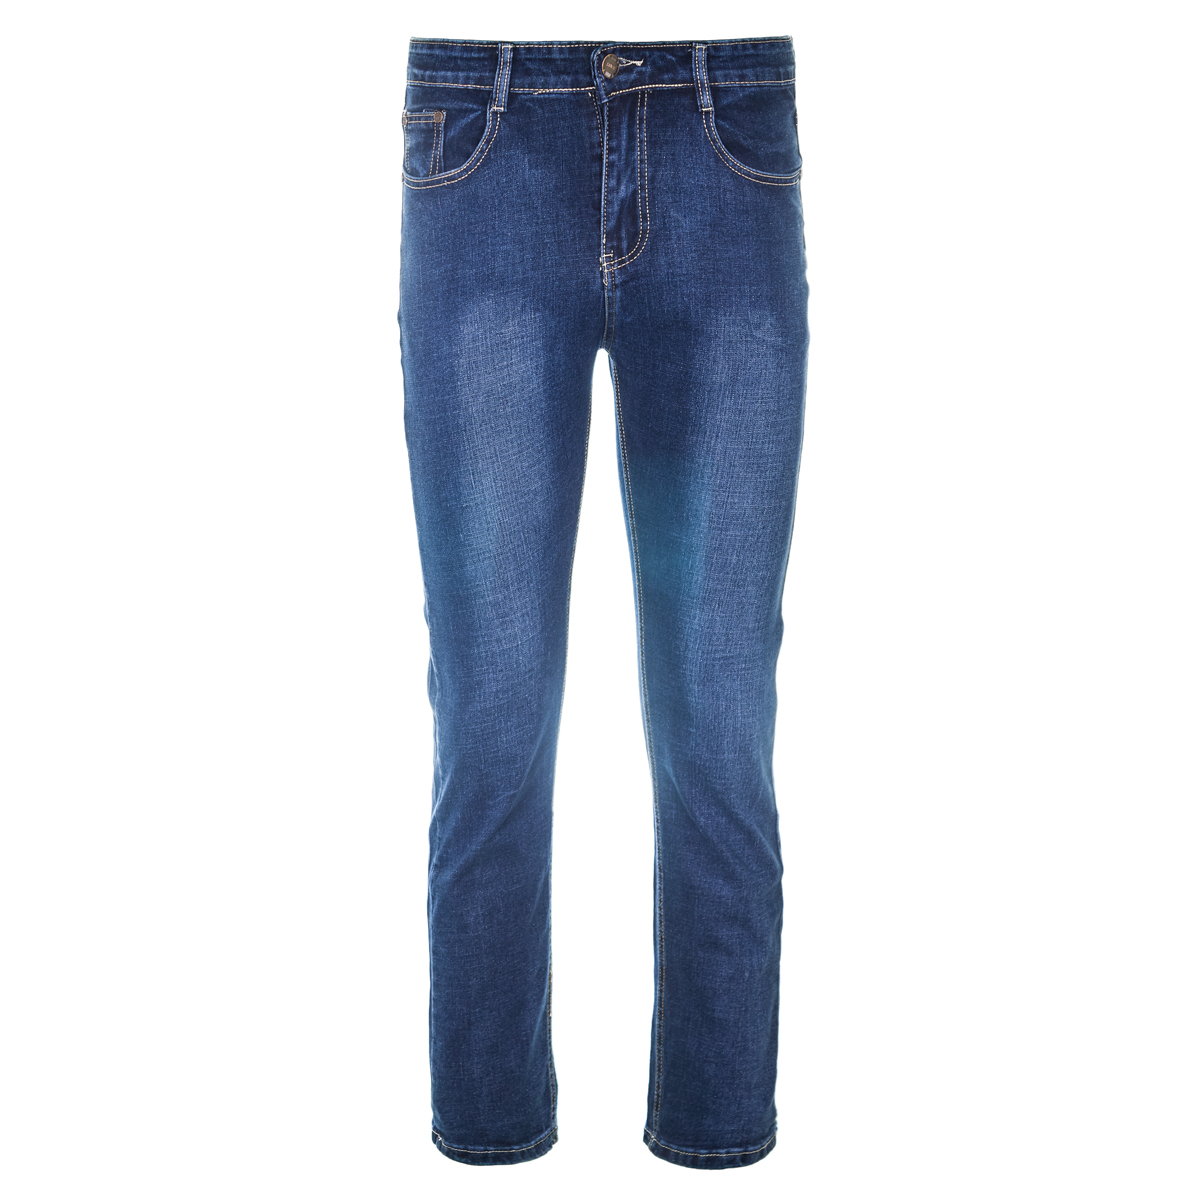 Муж. джинсы арт. 12-0093 Синий р. 38 Китай, размер 38 - фото 1